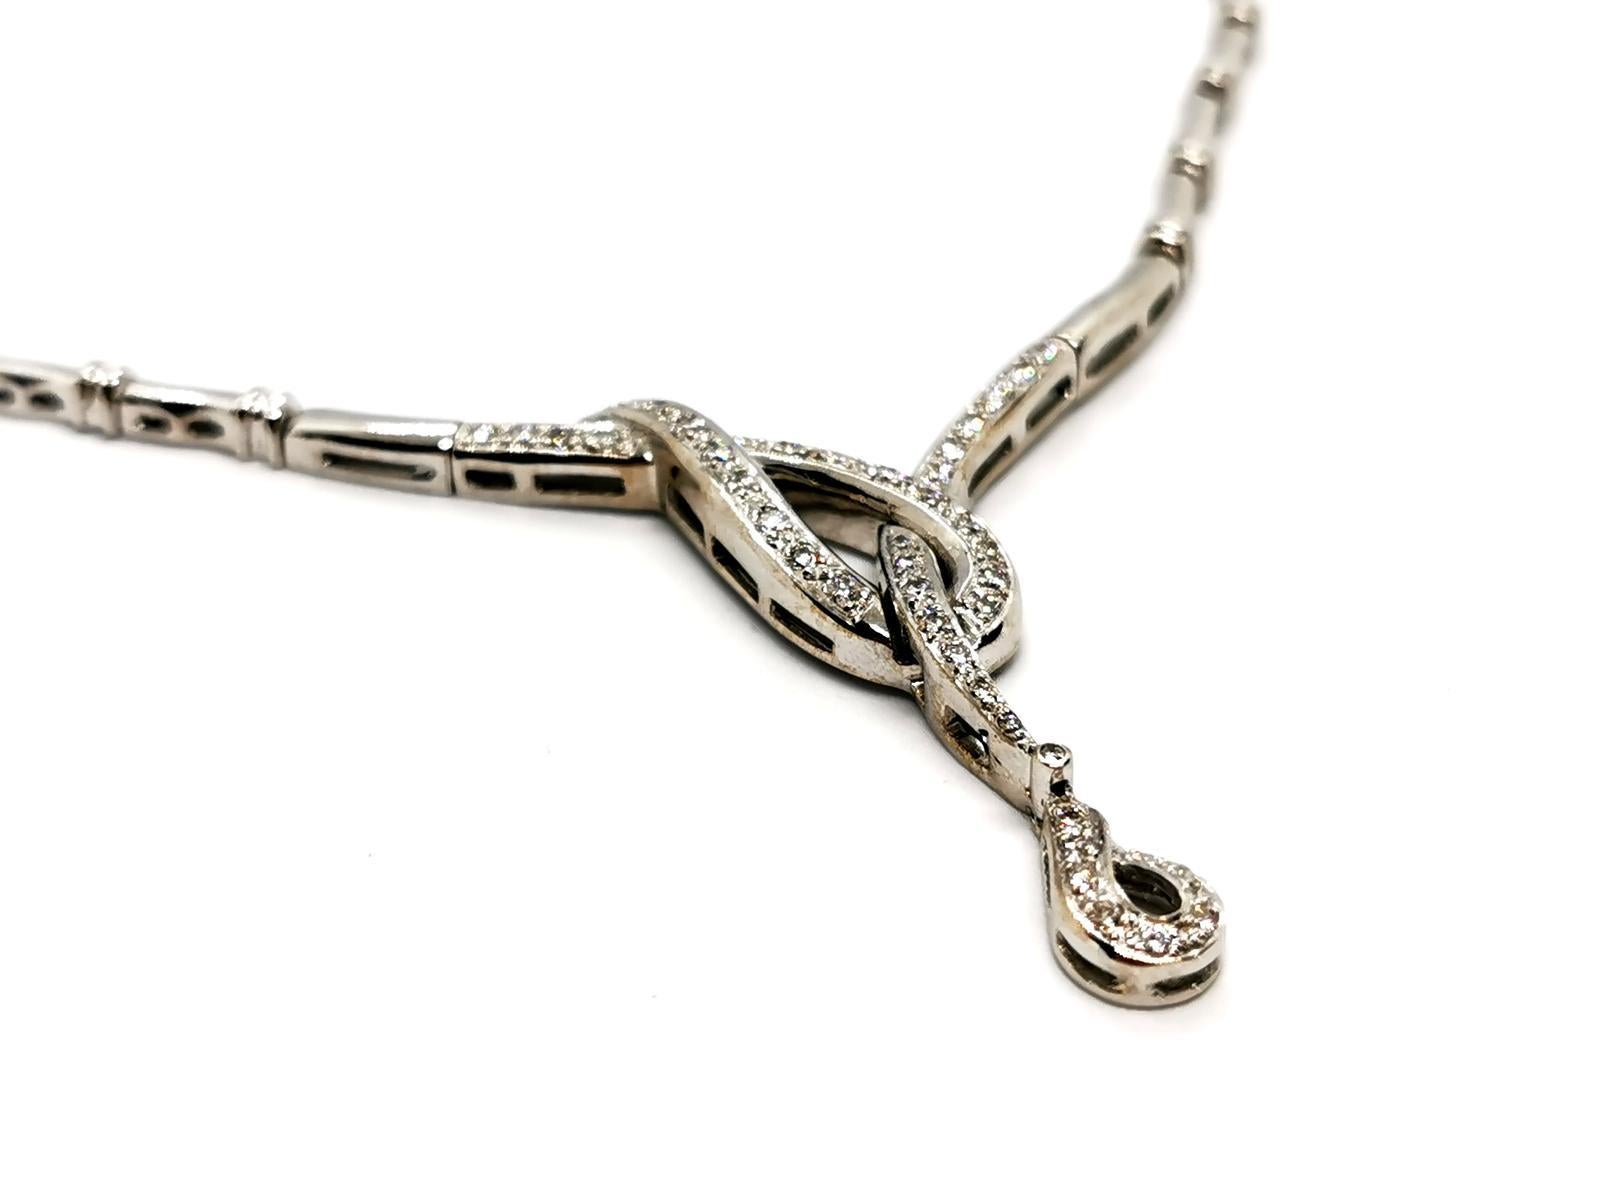 Brilliant Cut Chain Necklace White Gold Diamond For Sale